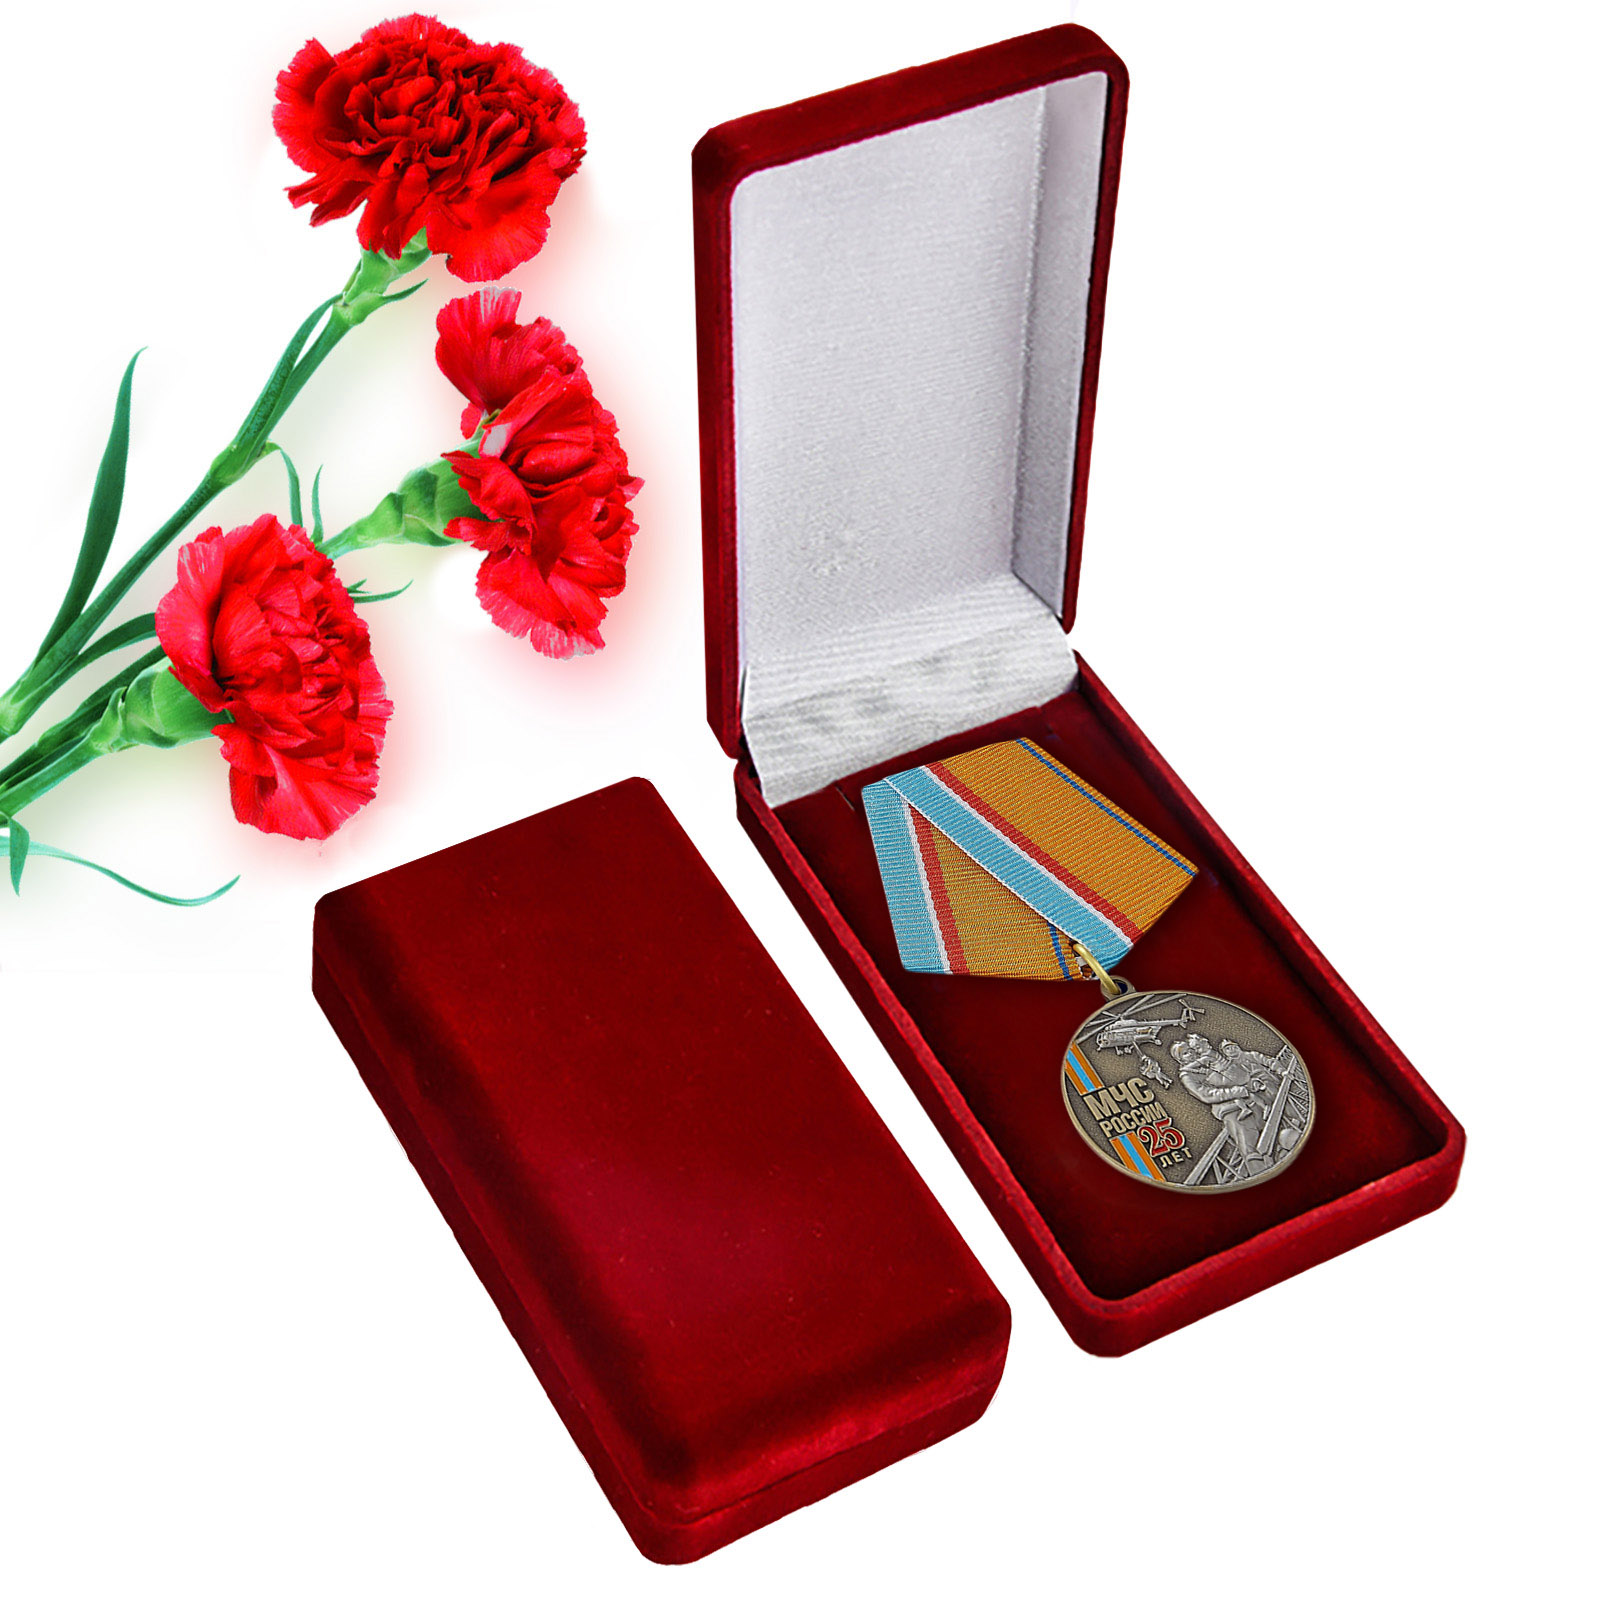 Купить памятную медаль "МЧС России 25 лет" с доставкой в ваш город